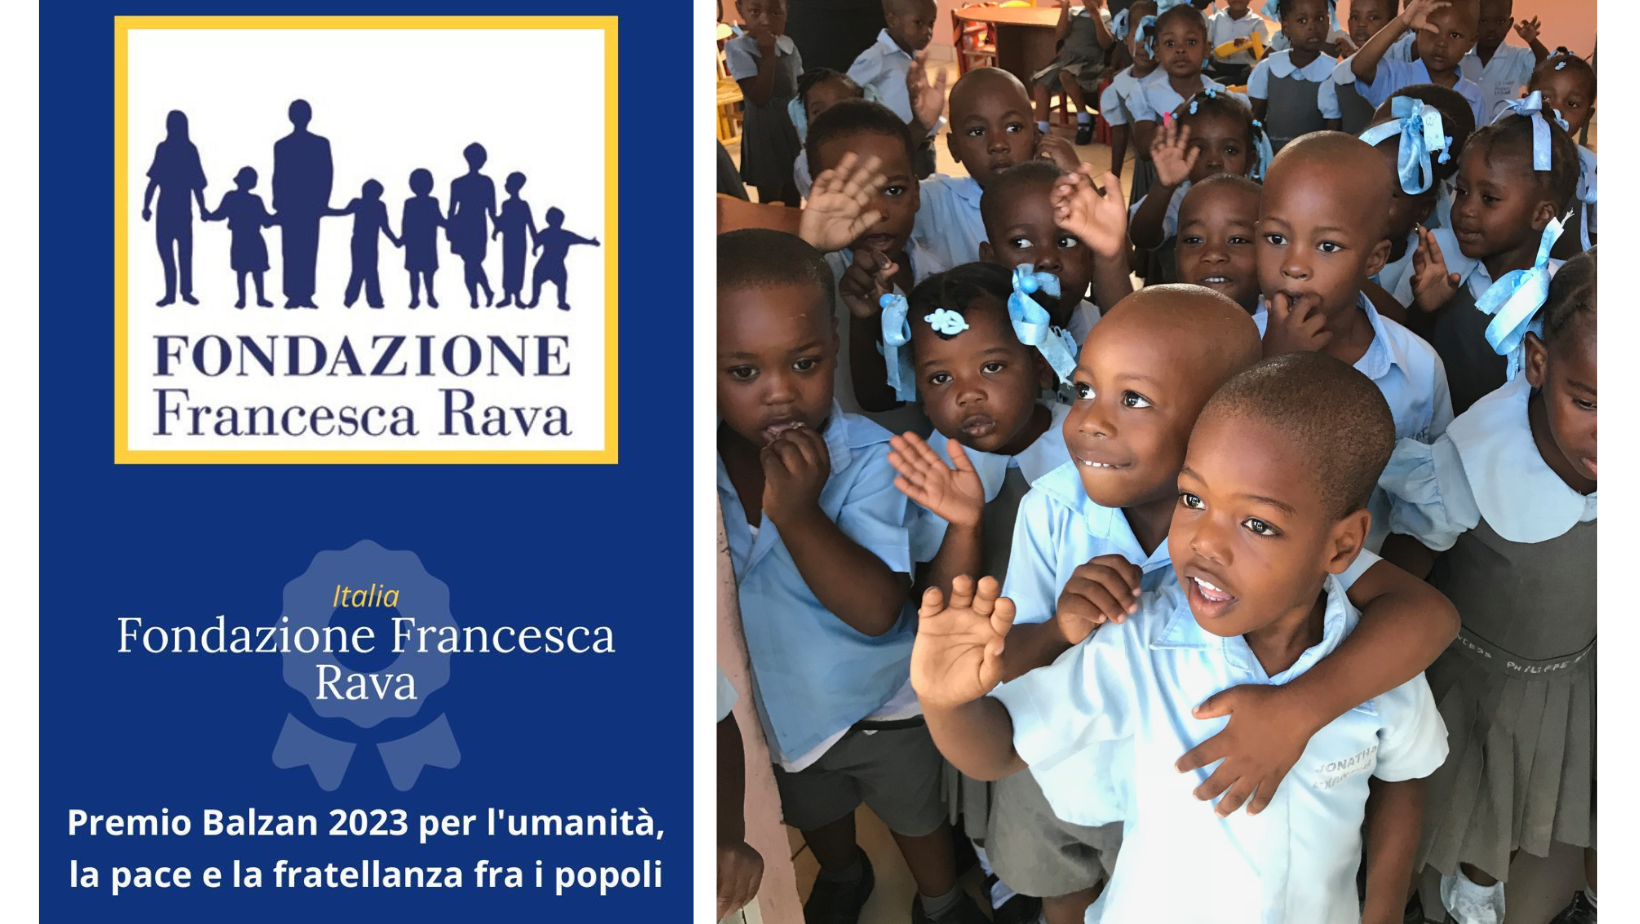 Il Premio Balzan 2023 per l’umanità, la pace e la fratellanza tra popoli assegnato a Fondazione Francesca Rava 